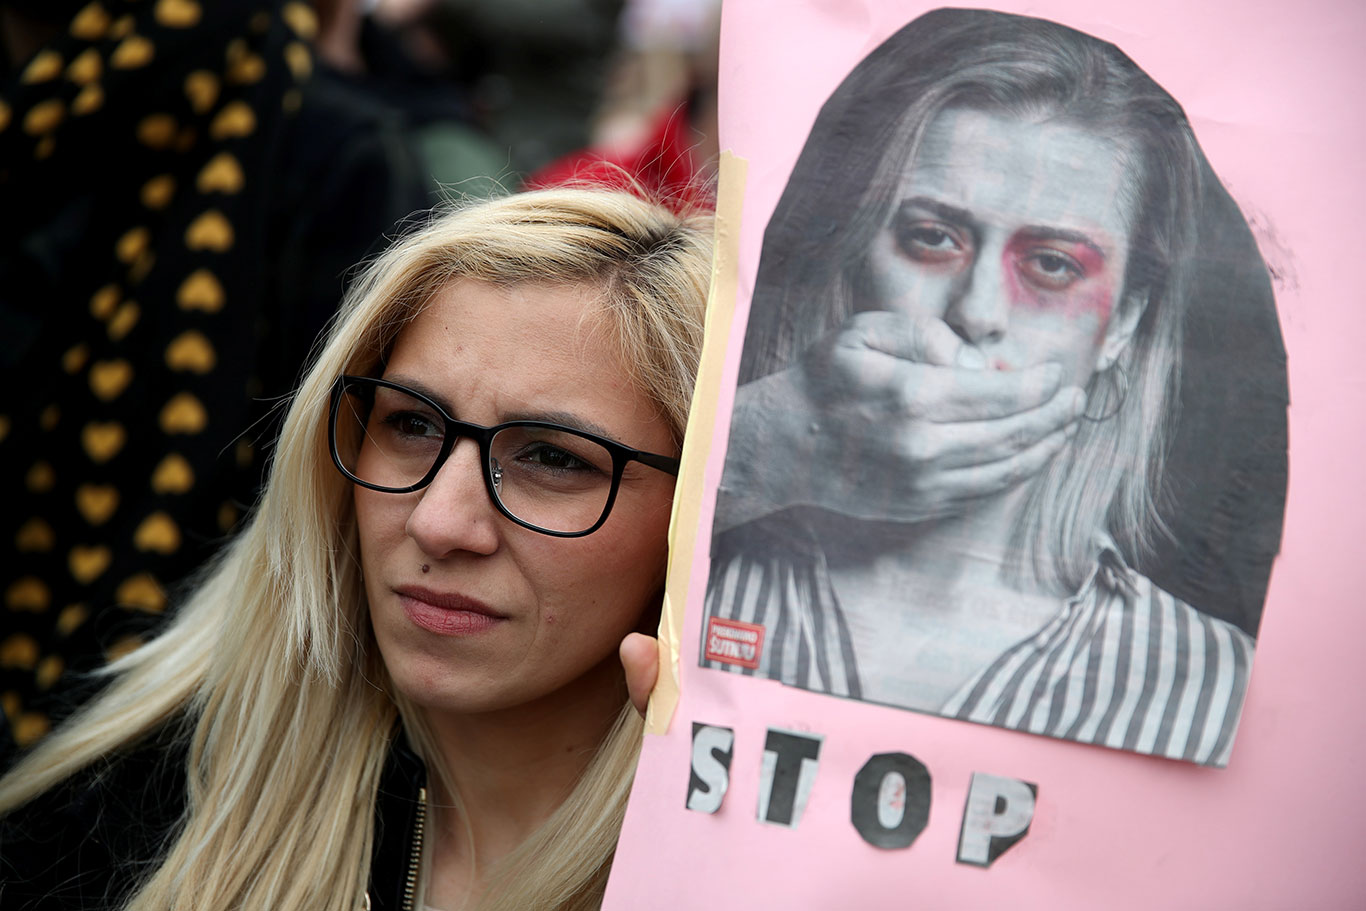 Manifestante protesta contra a violência de gênero (Foto: Reuters)